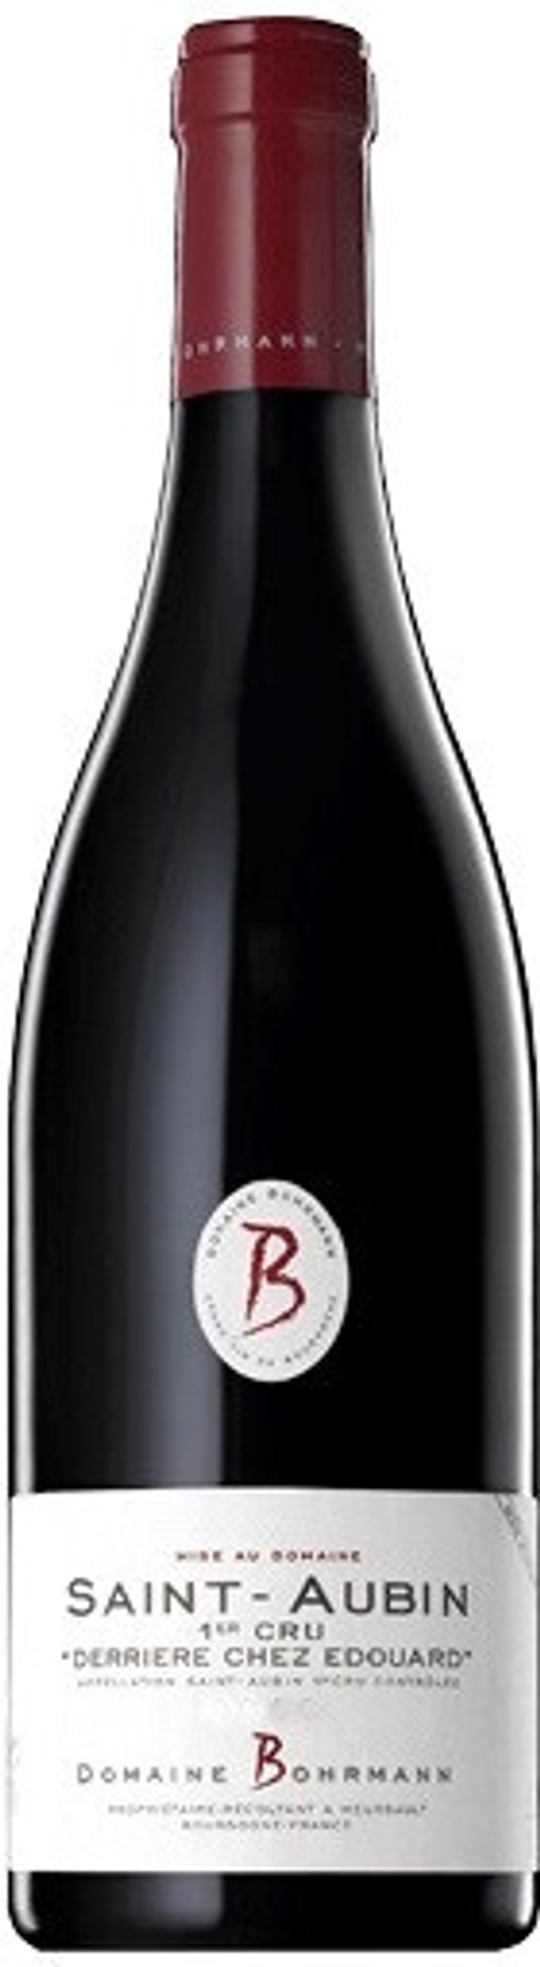 Вино Domaine Bohrmann Saint-Aubin 1-er Cru Derriere Chez Edouard AOC, 0,75 л.